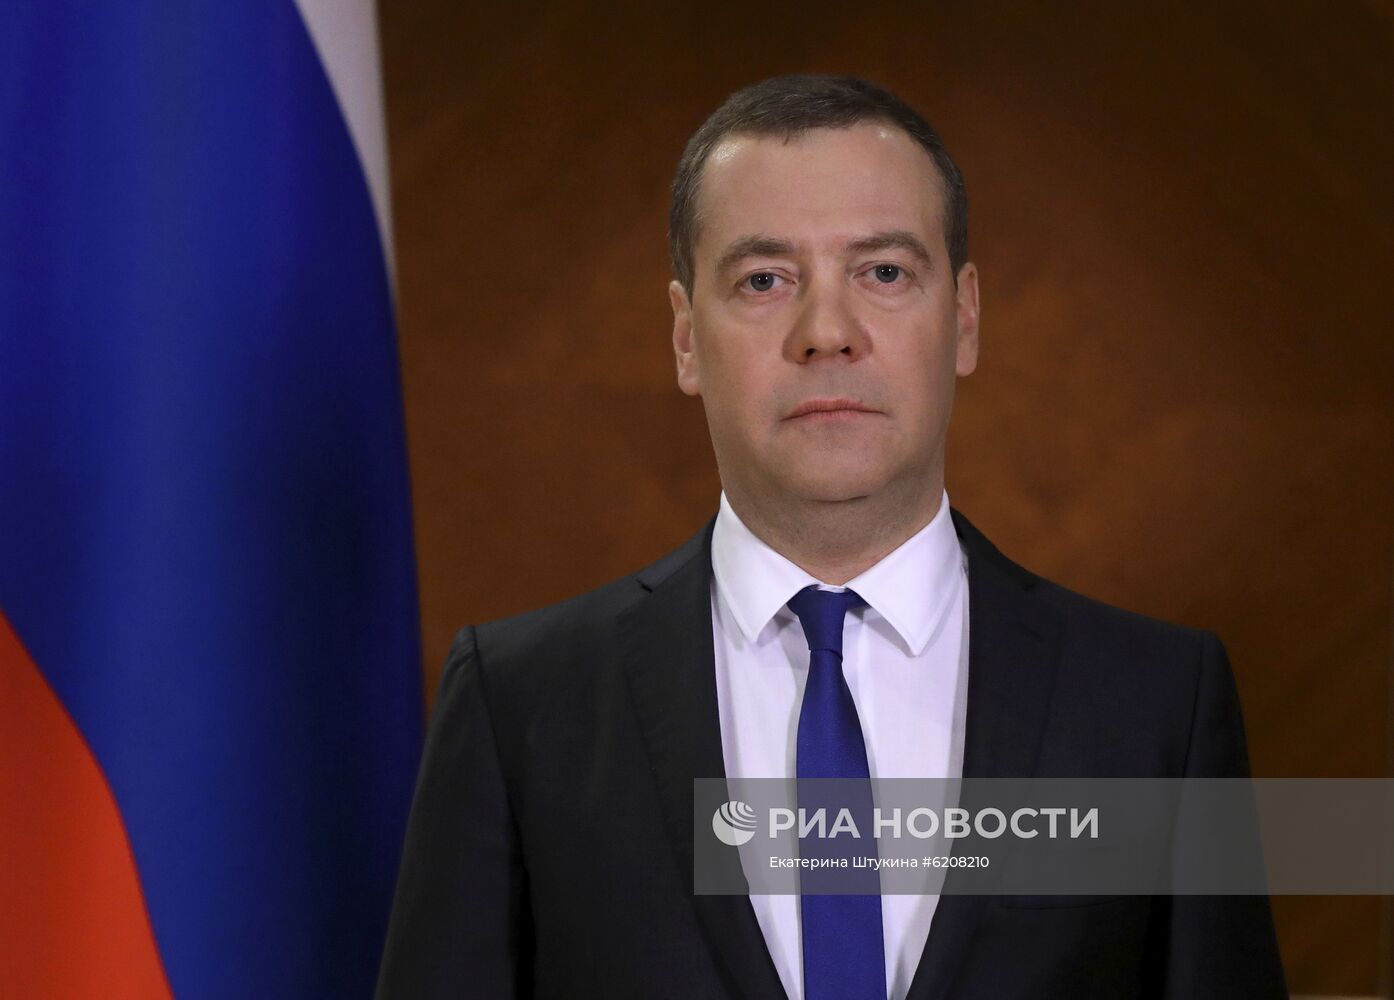 Заместитель председателя Совета Безопасности РФ Дмитрий Медведев выступил с обращением